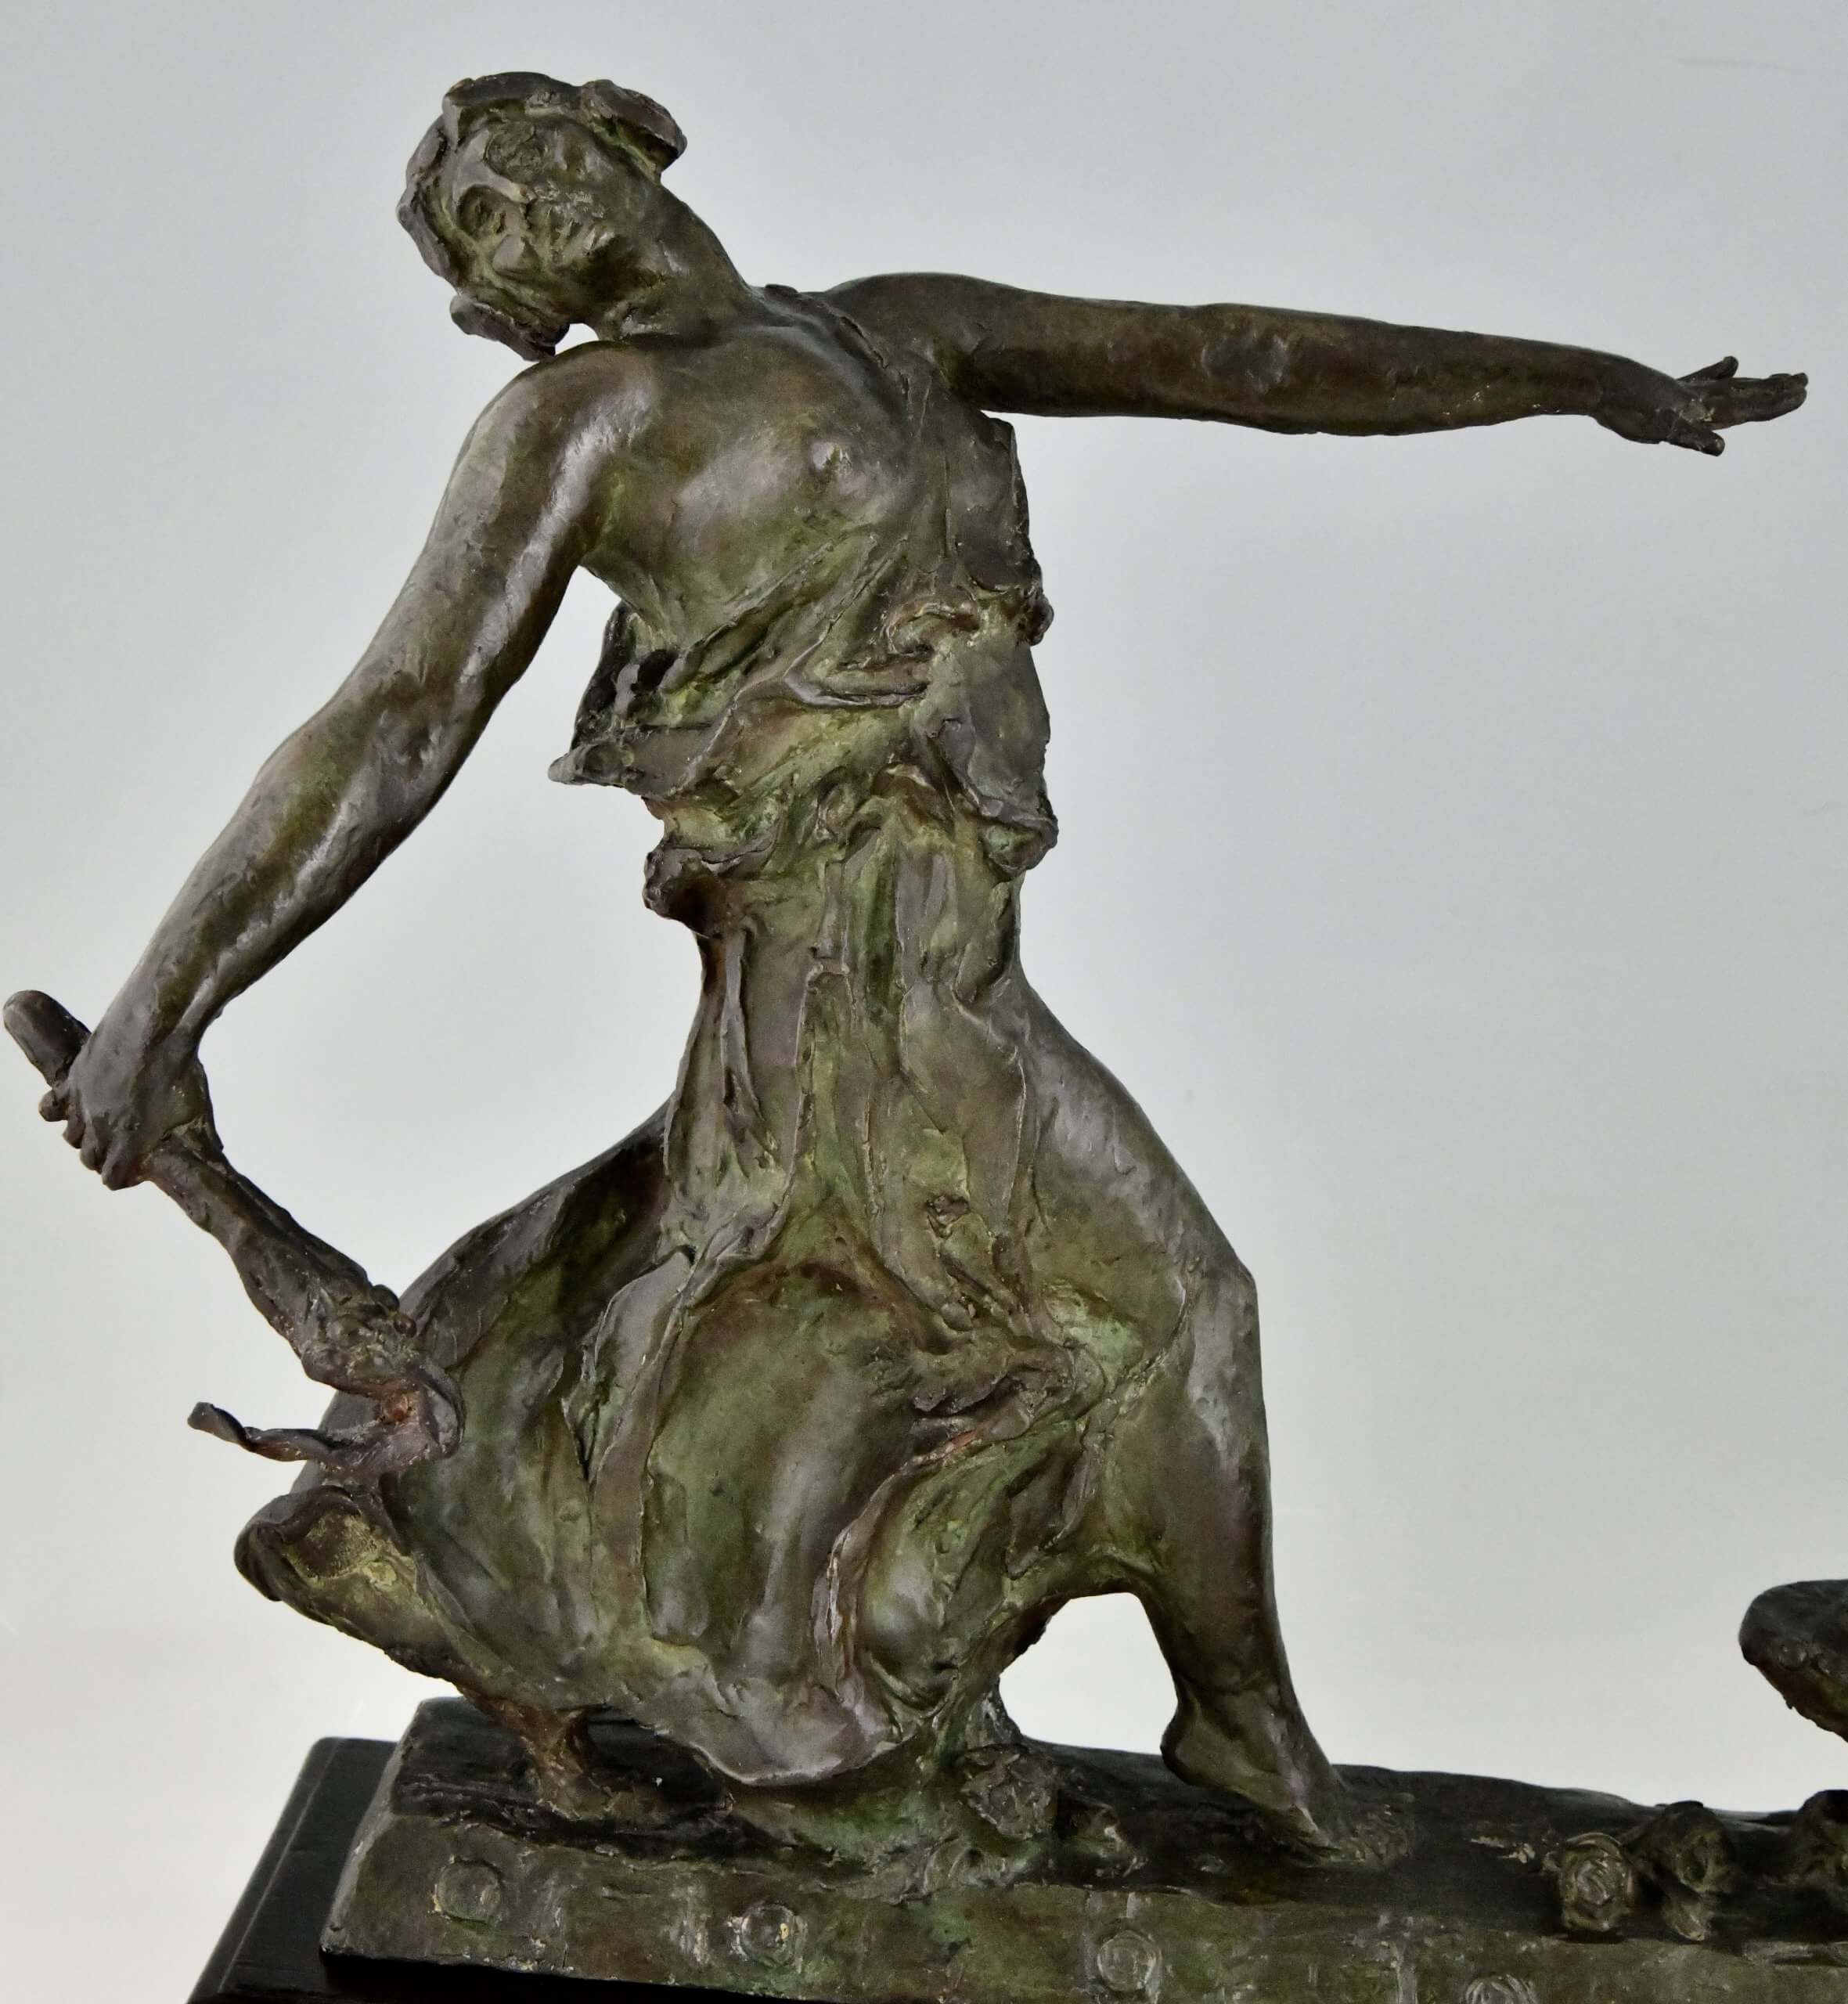 Art Deco bronzen sculptuur de vuurdansers